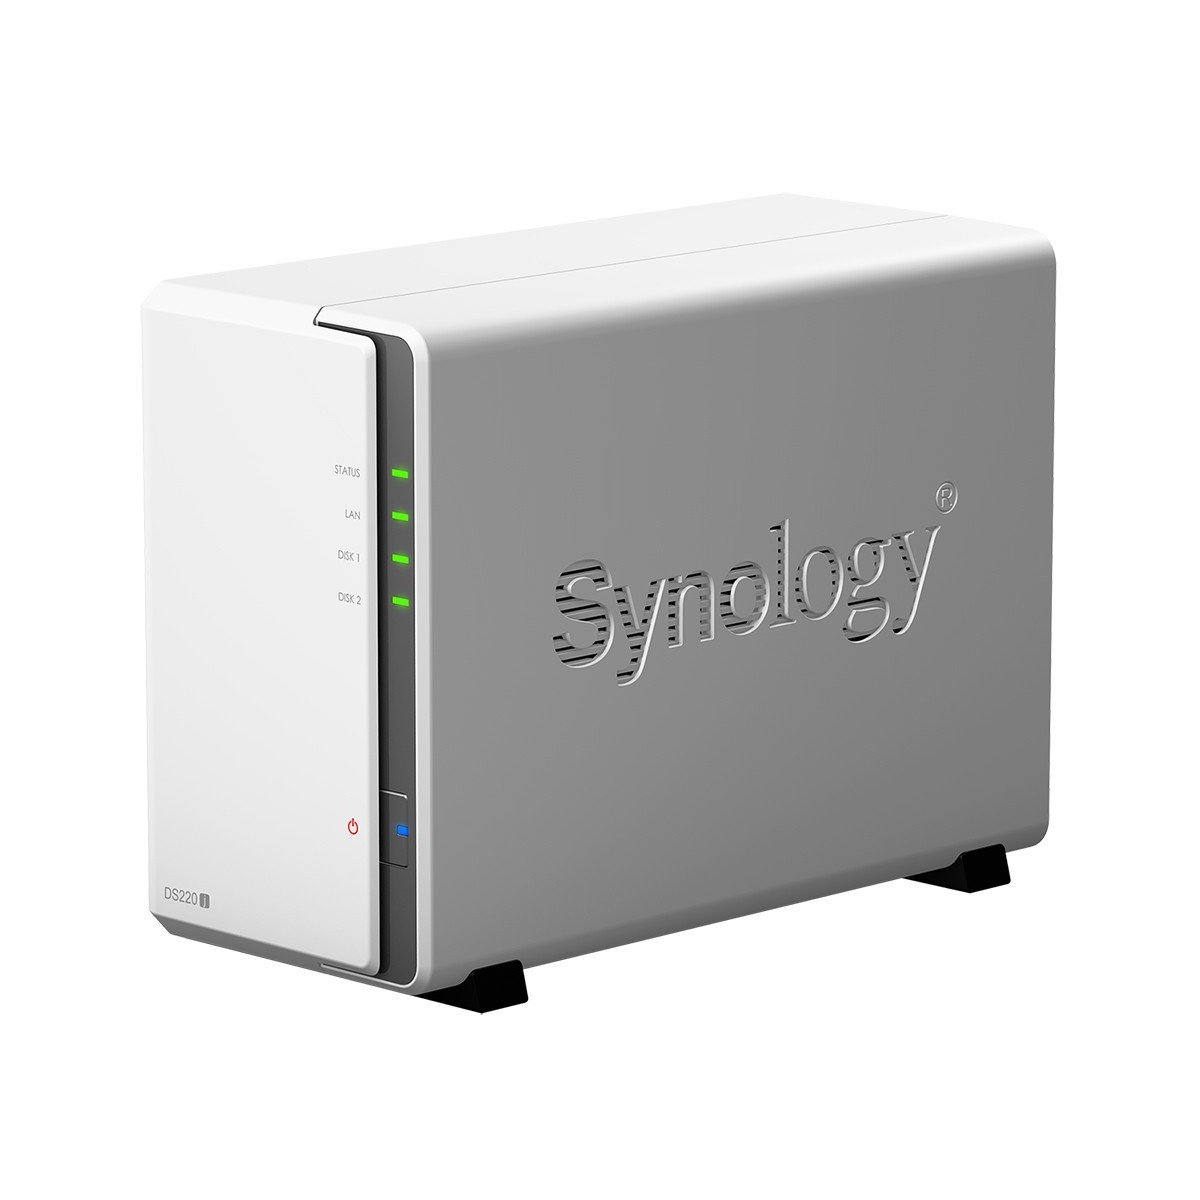 Synology DiskStation DS220j - NAS - Mini Tower - Realtek - RTD1296 - White